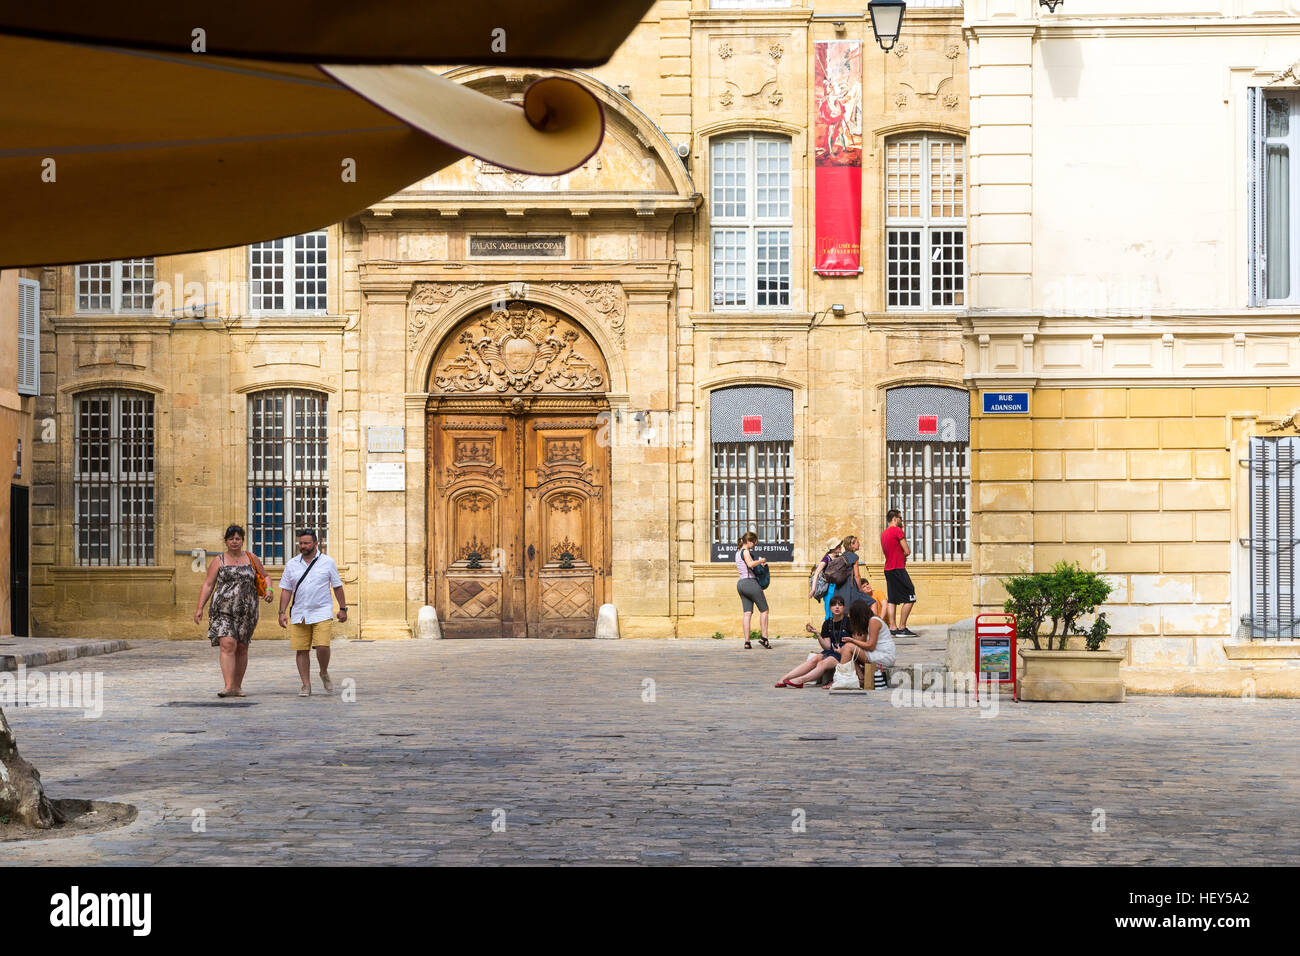 Aix en provence,France-August 9,2016:persone e passeggiata turistica e ammirare il museo della tappezzeria durante una giornata di sole. Foto Stock